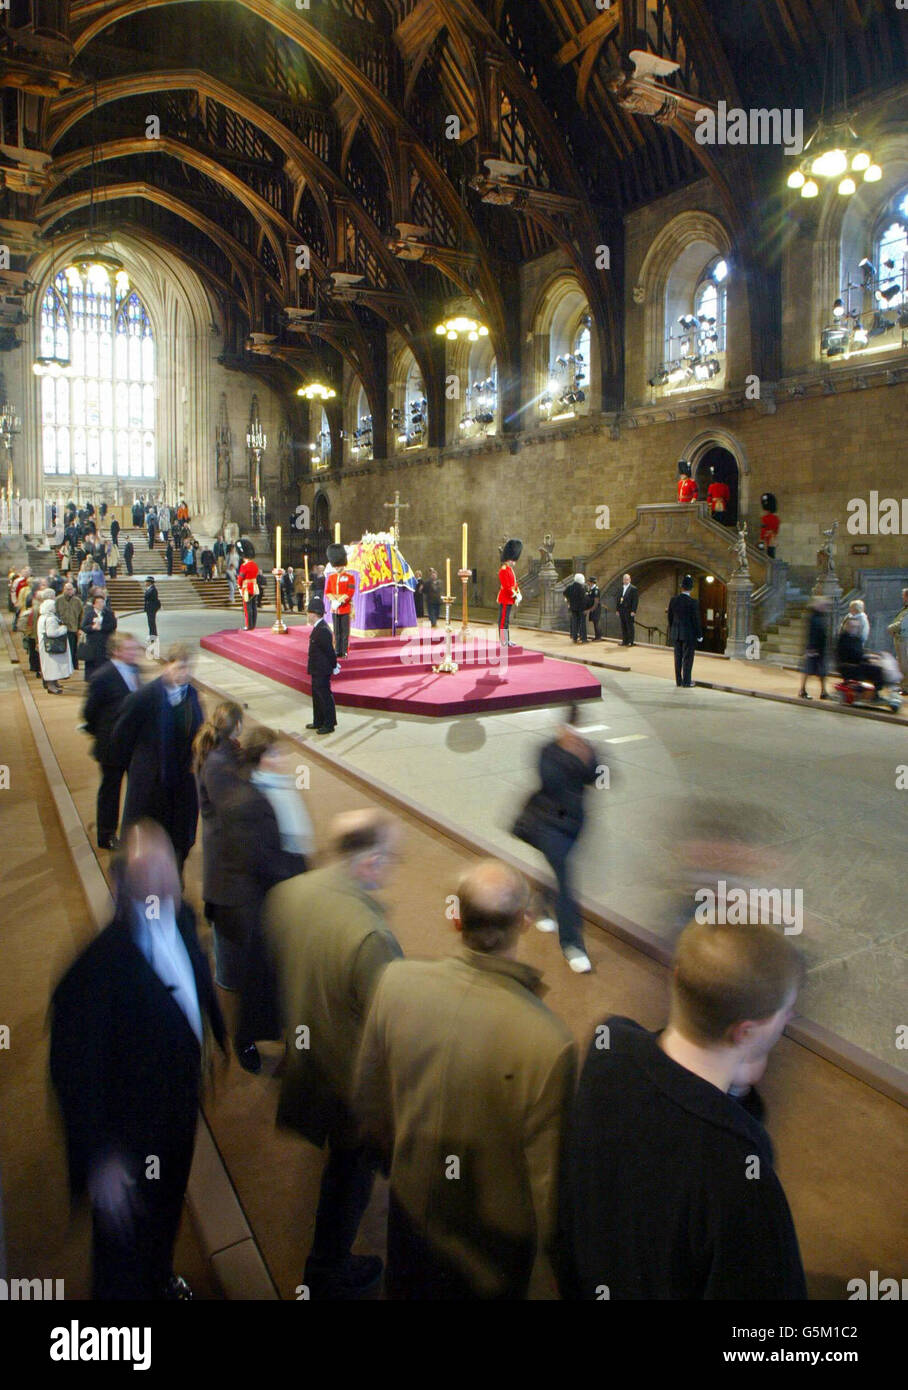 Wachbeamte bewachen den Sarg von Königin Elizabeth, der Königin-Mutter, die im Staat in der Westminster Hall liegt, während Mitglieder der Öffentlichkeit vor ihrer Beerdigung in der Westminster Abbey ihre letzte Ehre erweisen. Stockfoto